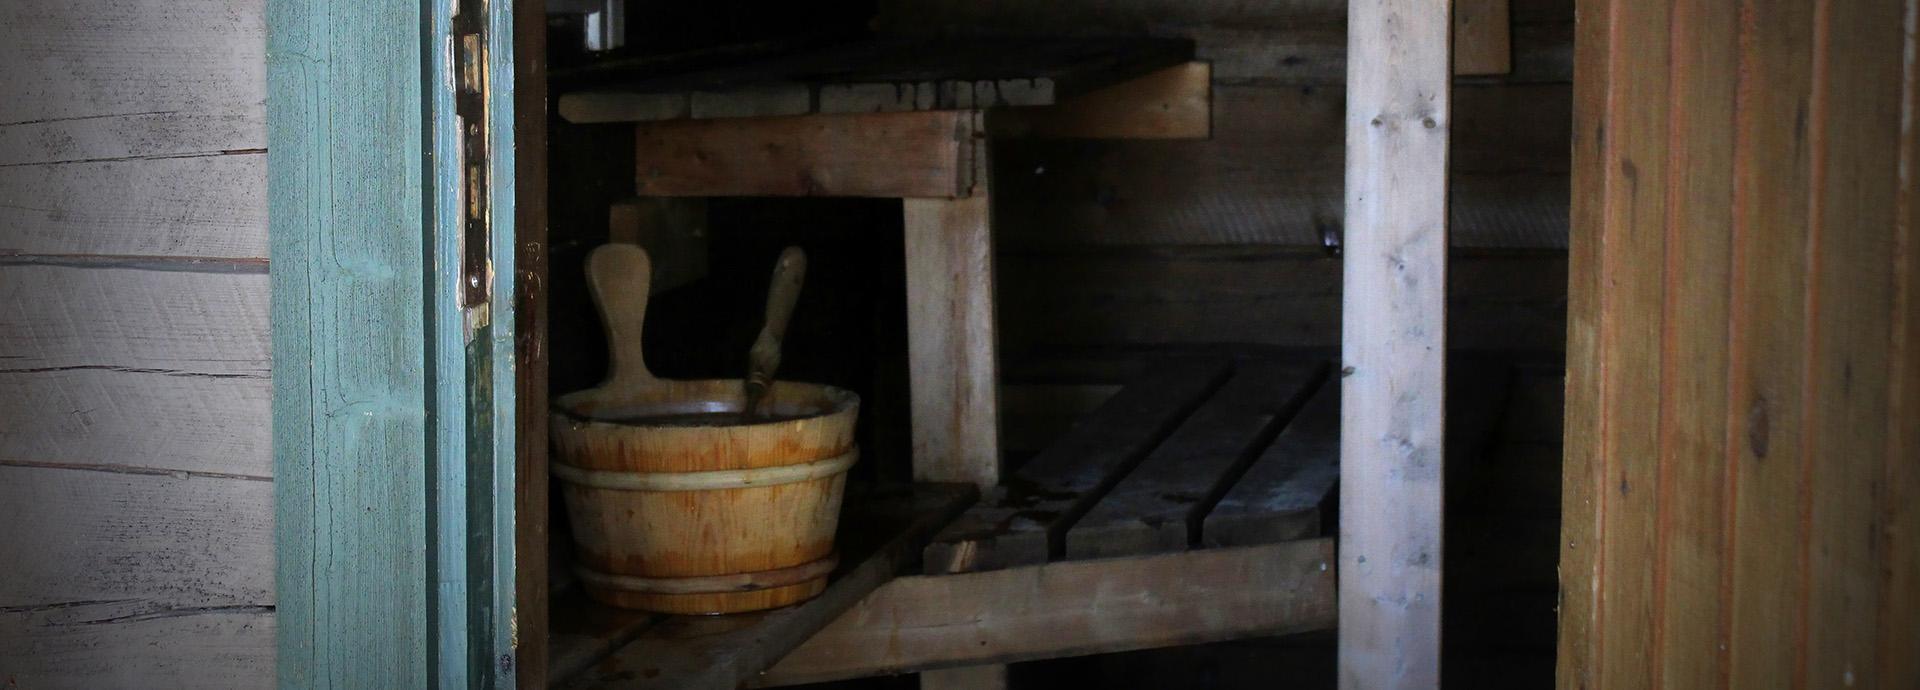 Open door to a sauna, showing a wooden water bucket